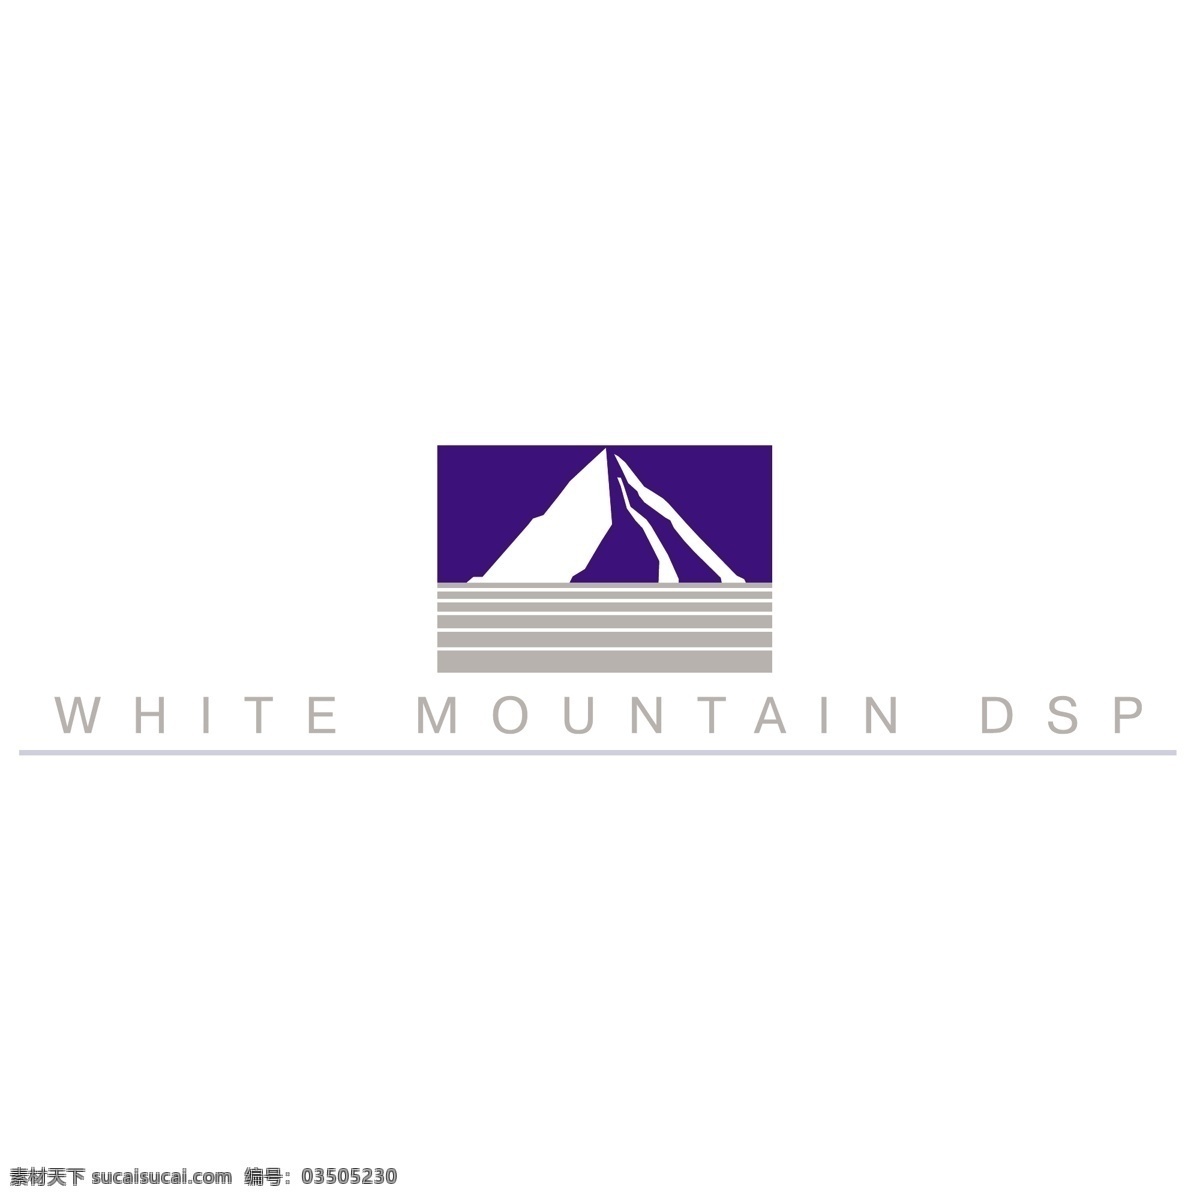 白色 山 dsp 标识 公司 免费 品牌 品牌标识 商标 矢量标志下载 免费矢量标识 矢量 psd源文件 logo设计